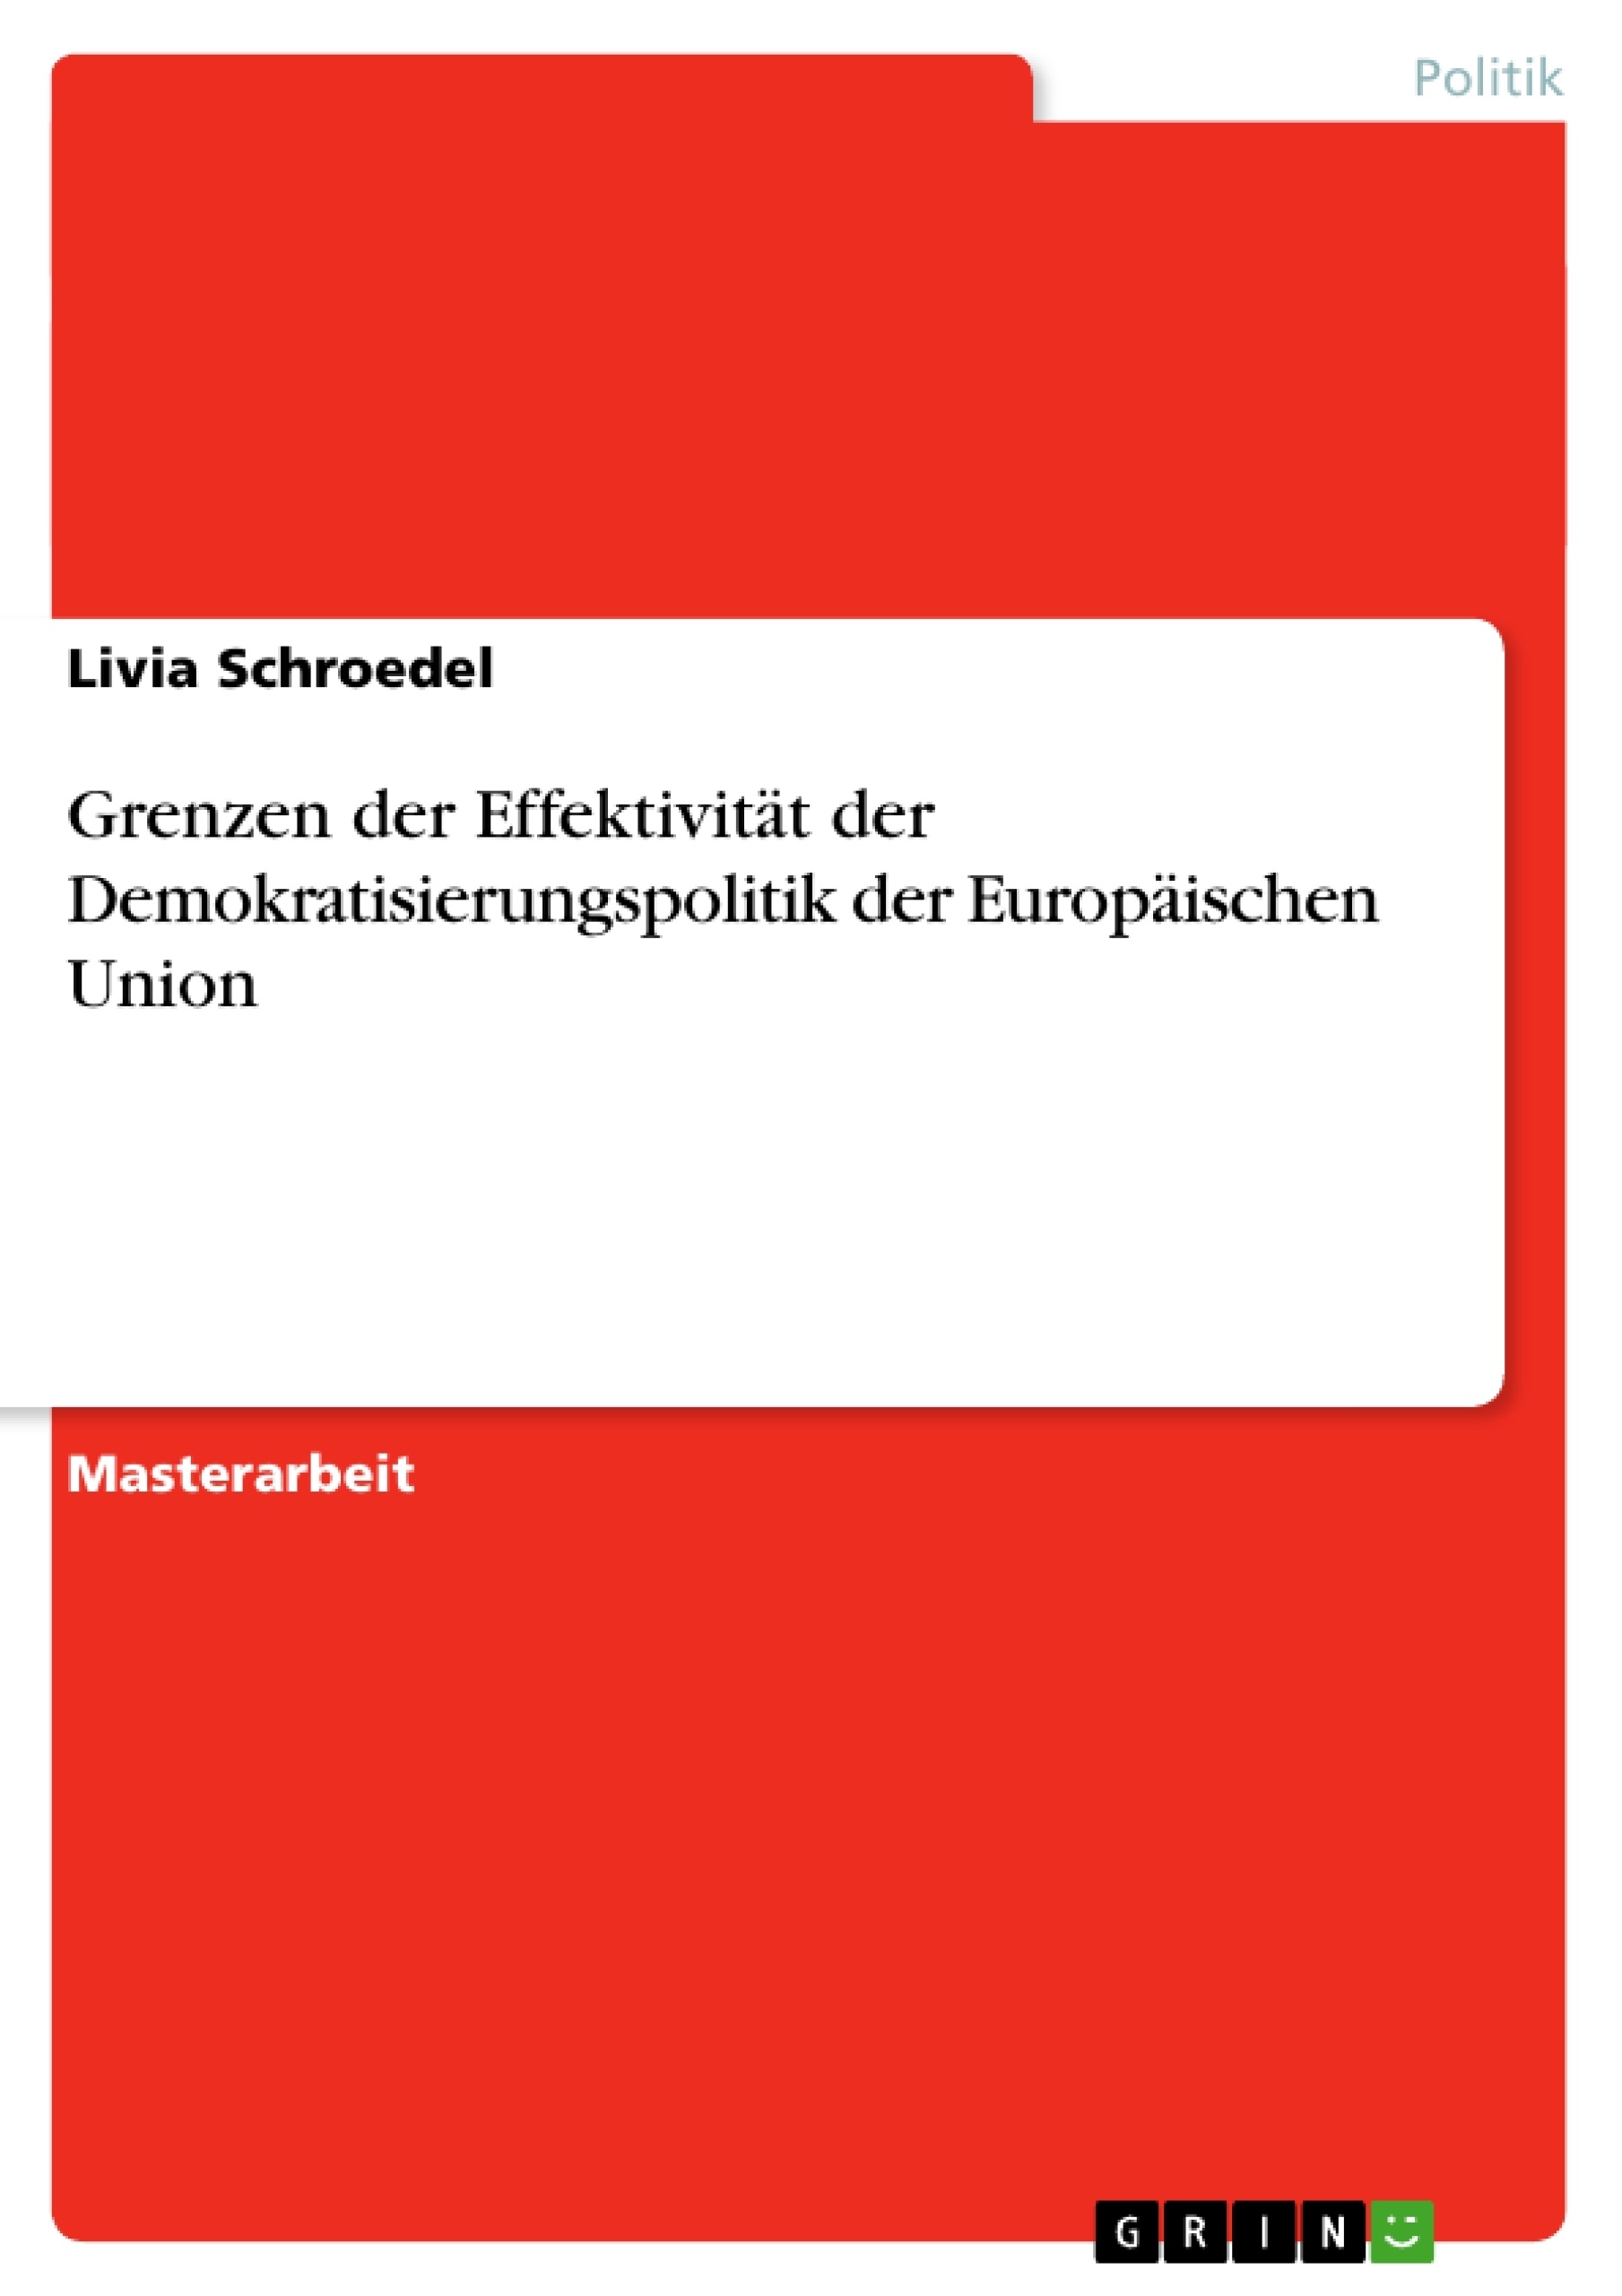 Título: Grenzen der Effektivität der Demokratisierungspolitik der Europäischen Union